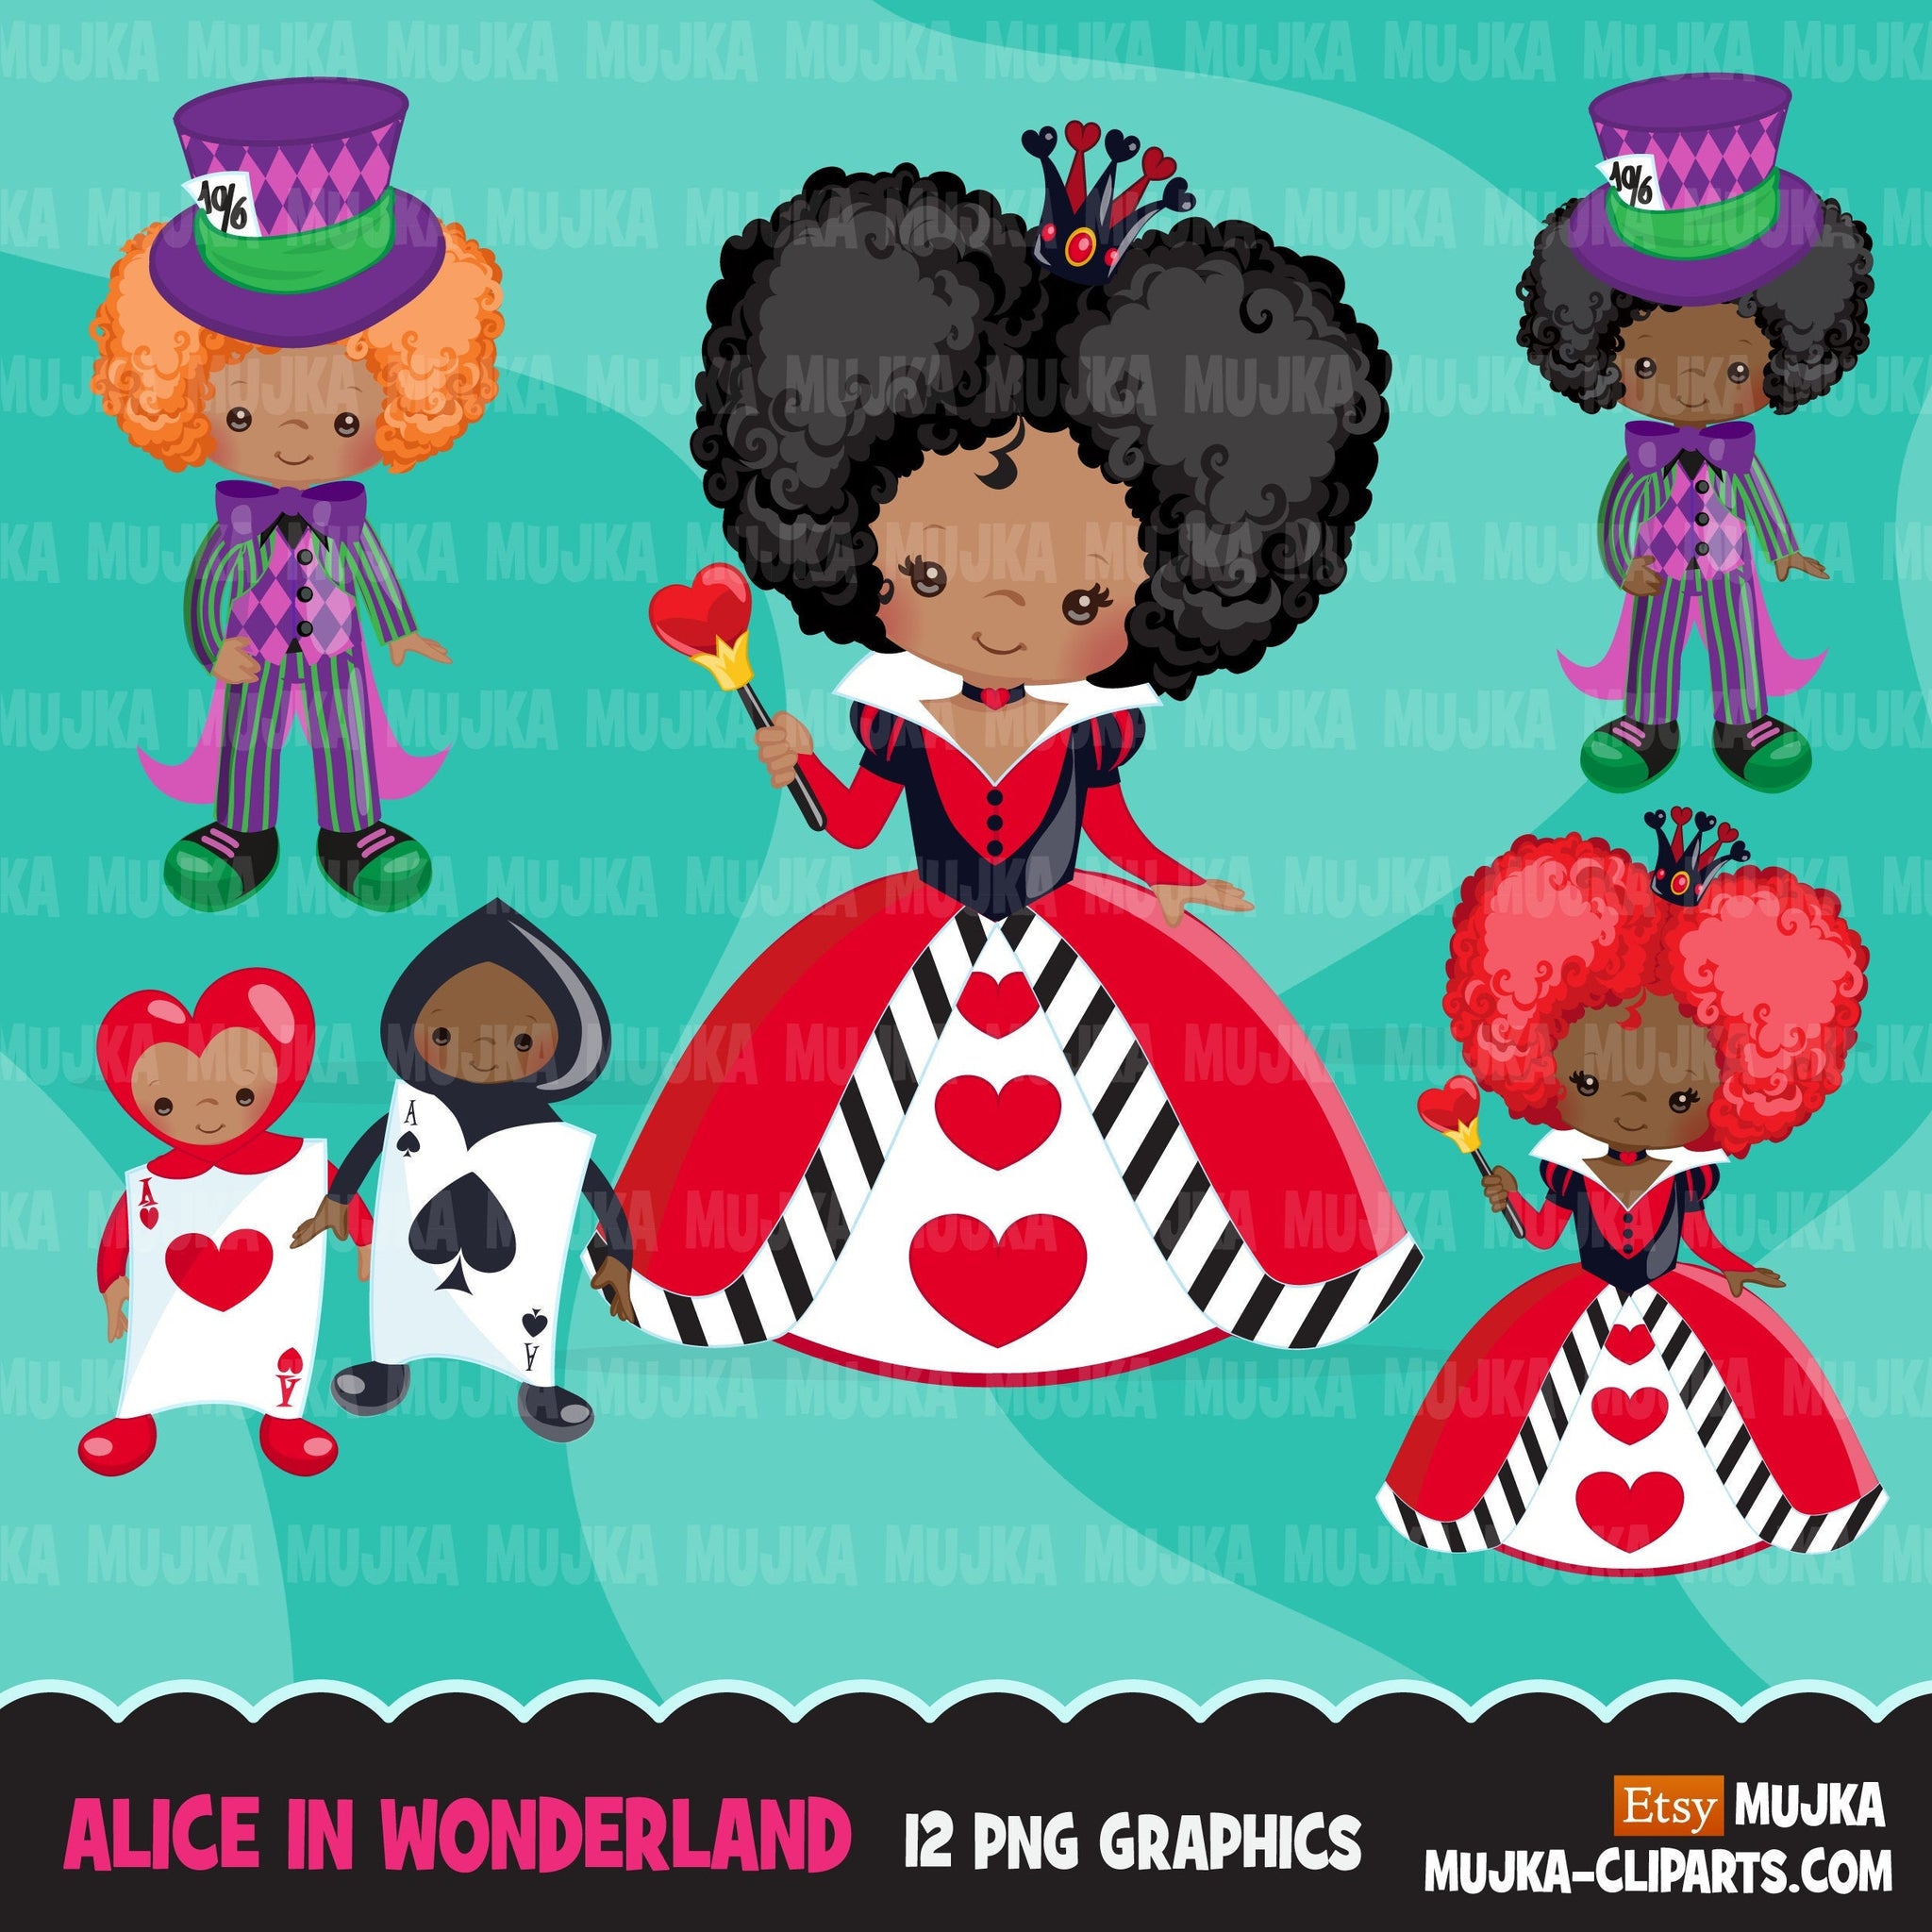 Clipart de Alice no País das Maravilhas, clipart afro Mad Hatter Tea Party, rainha de copas afro-americana, designs de sublimação Png, arquivos para cricut